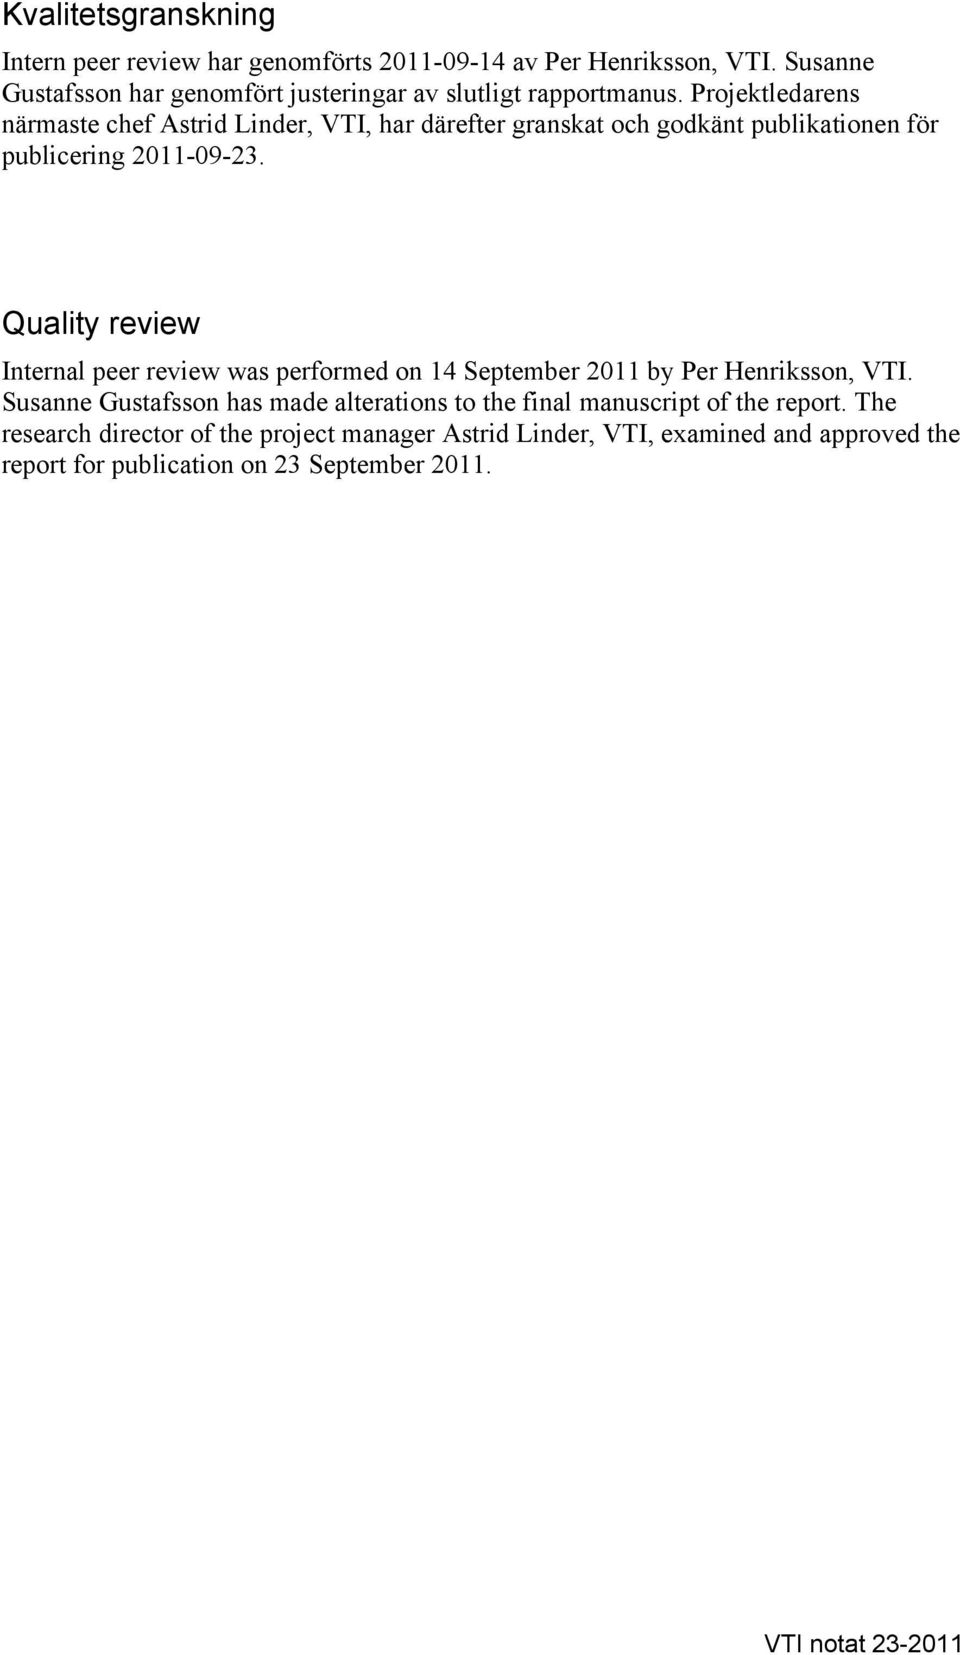 Projektledarens närmaste chef Astrid Linder, VTI, har därefter granskat och godkänt publikationen för publicering 2011-09-23.